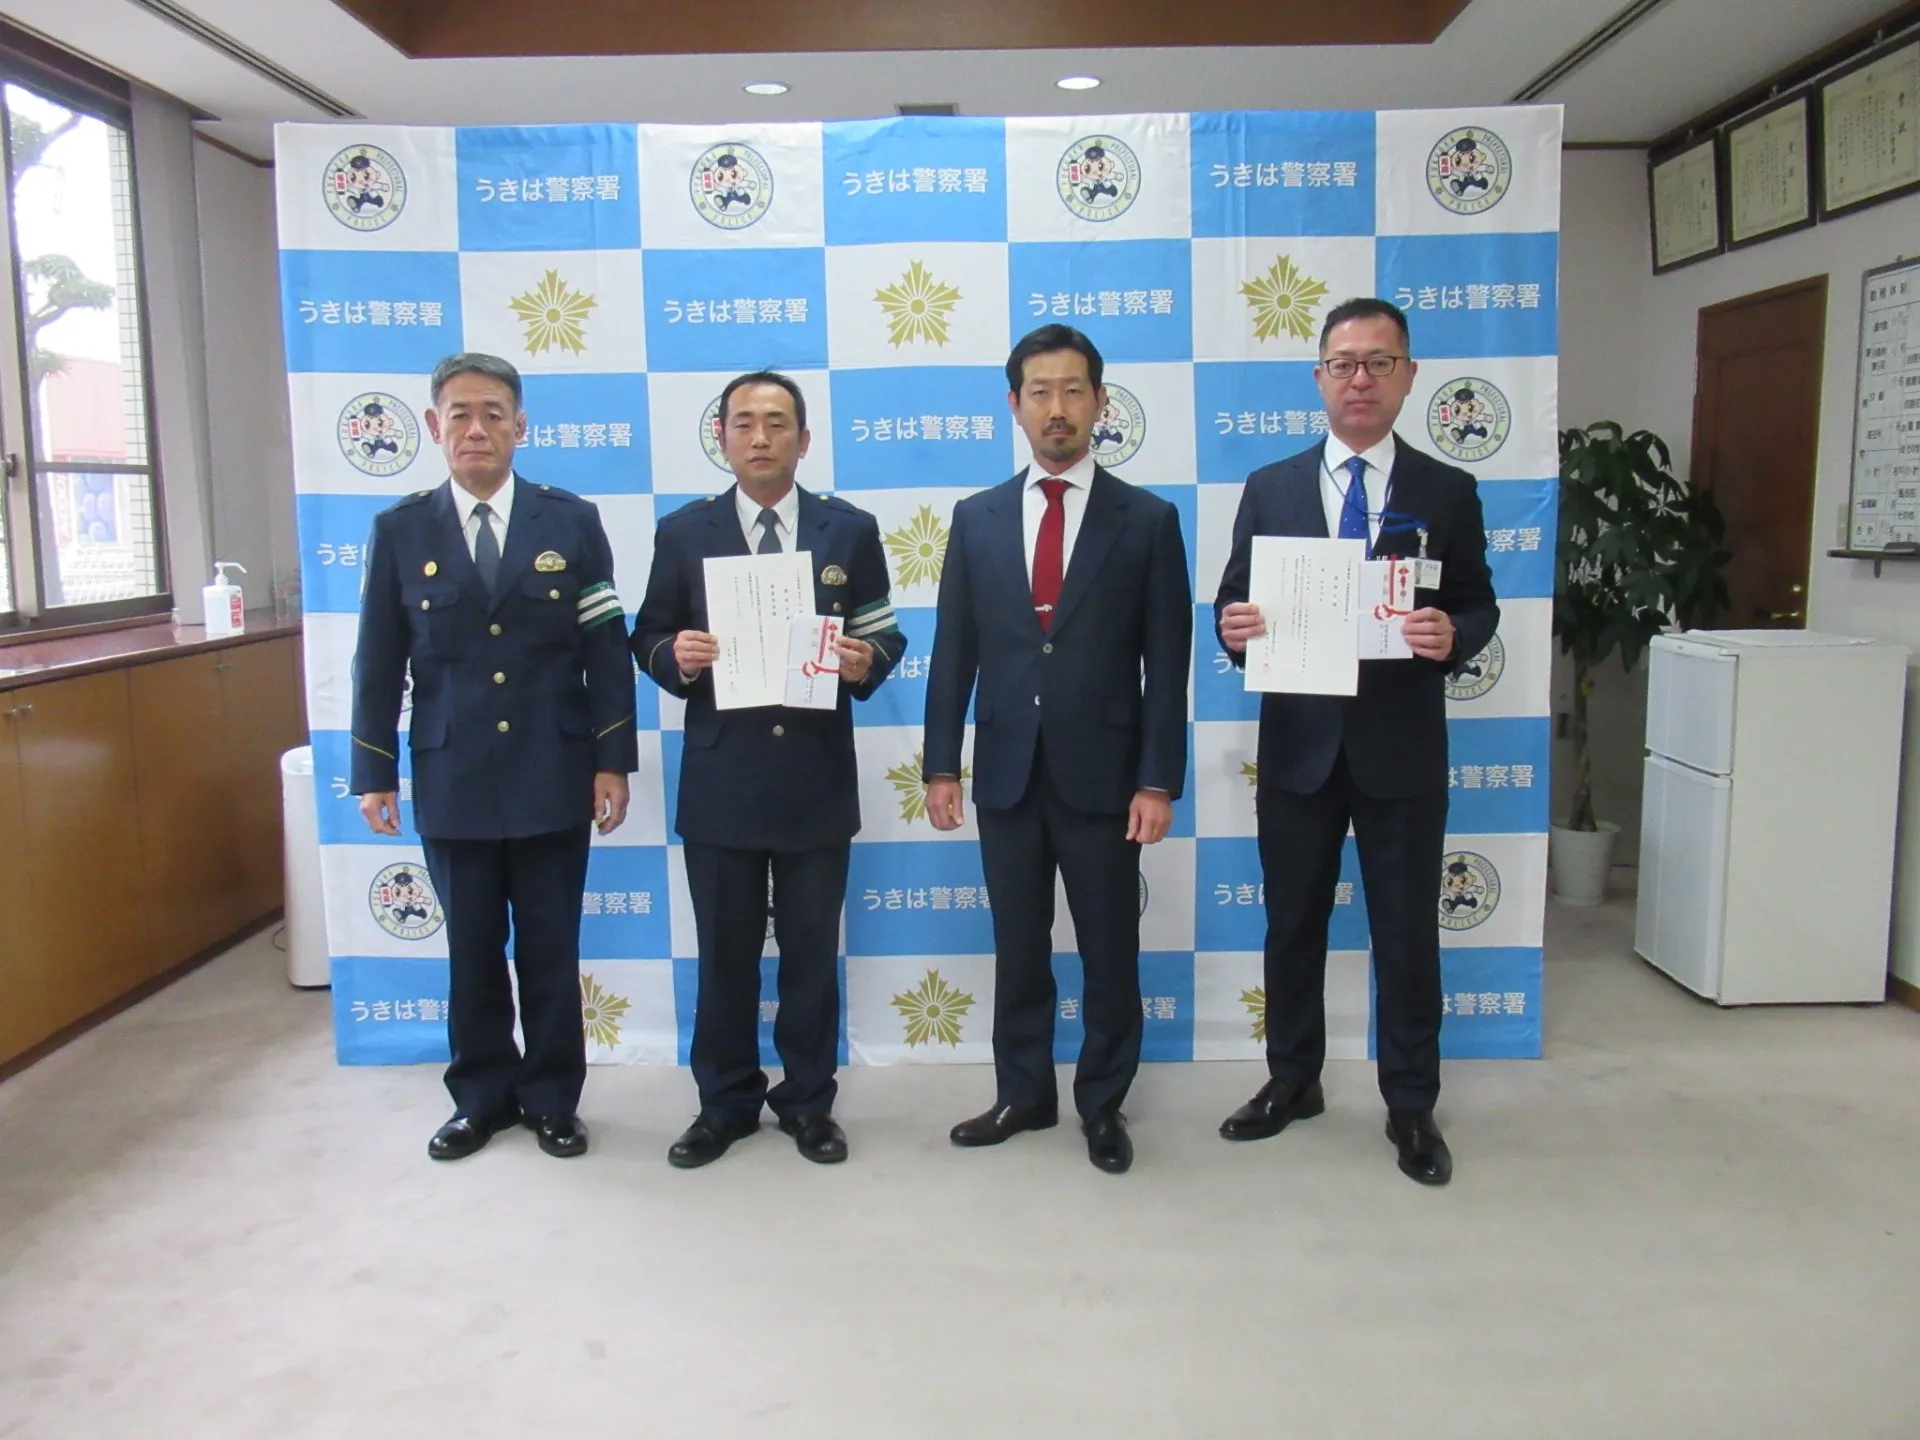 「福岡県警察を励ます会」を代表して当法人の理事長 鬼塚一郎が激励を行いました